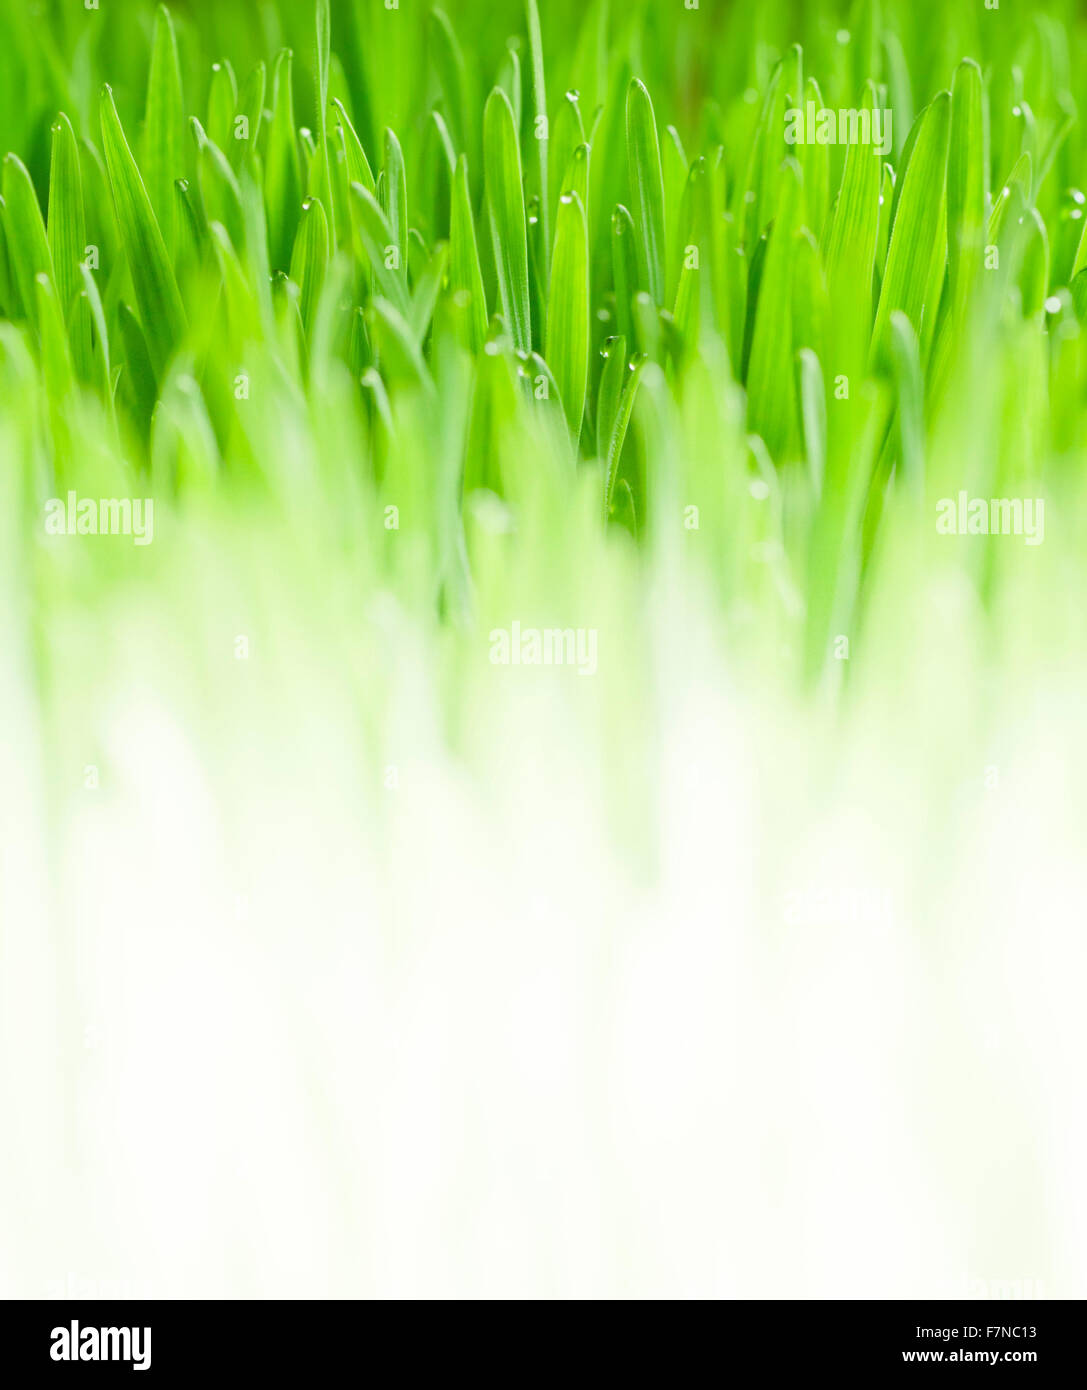 Lush, fond d'herbe verte fraîche avec des gouttes d'humidité Banque D'Images